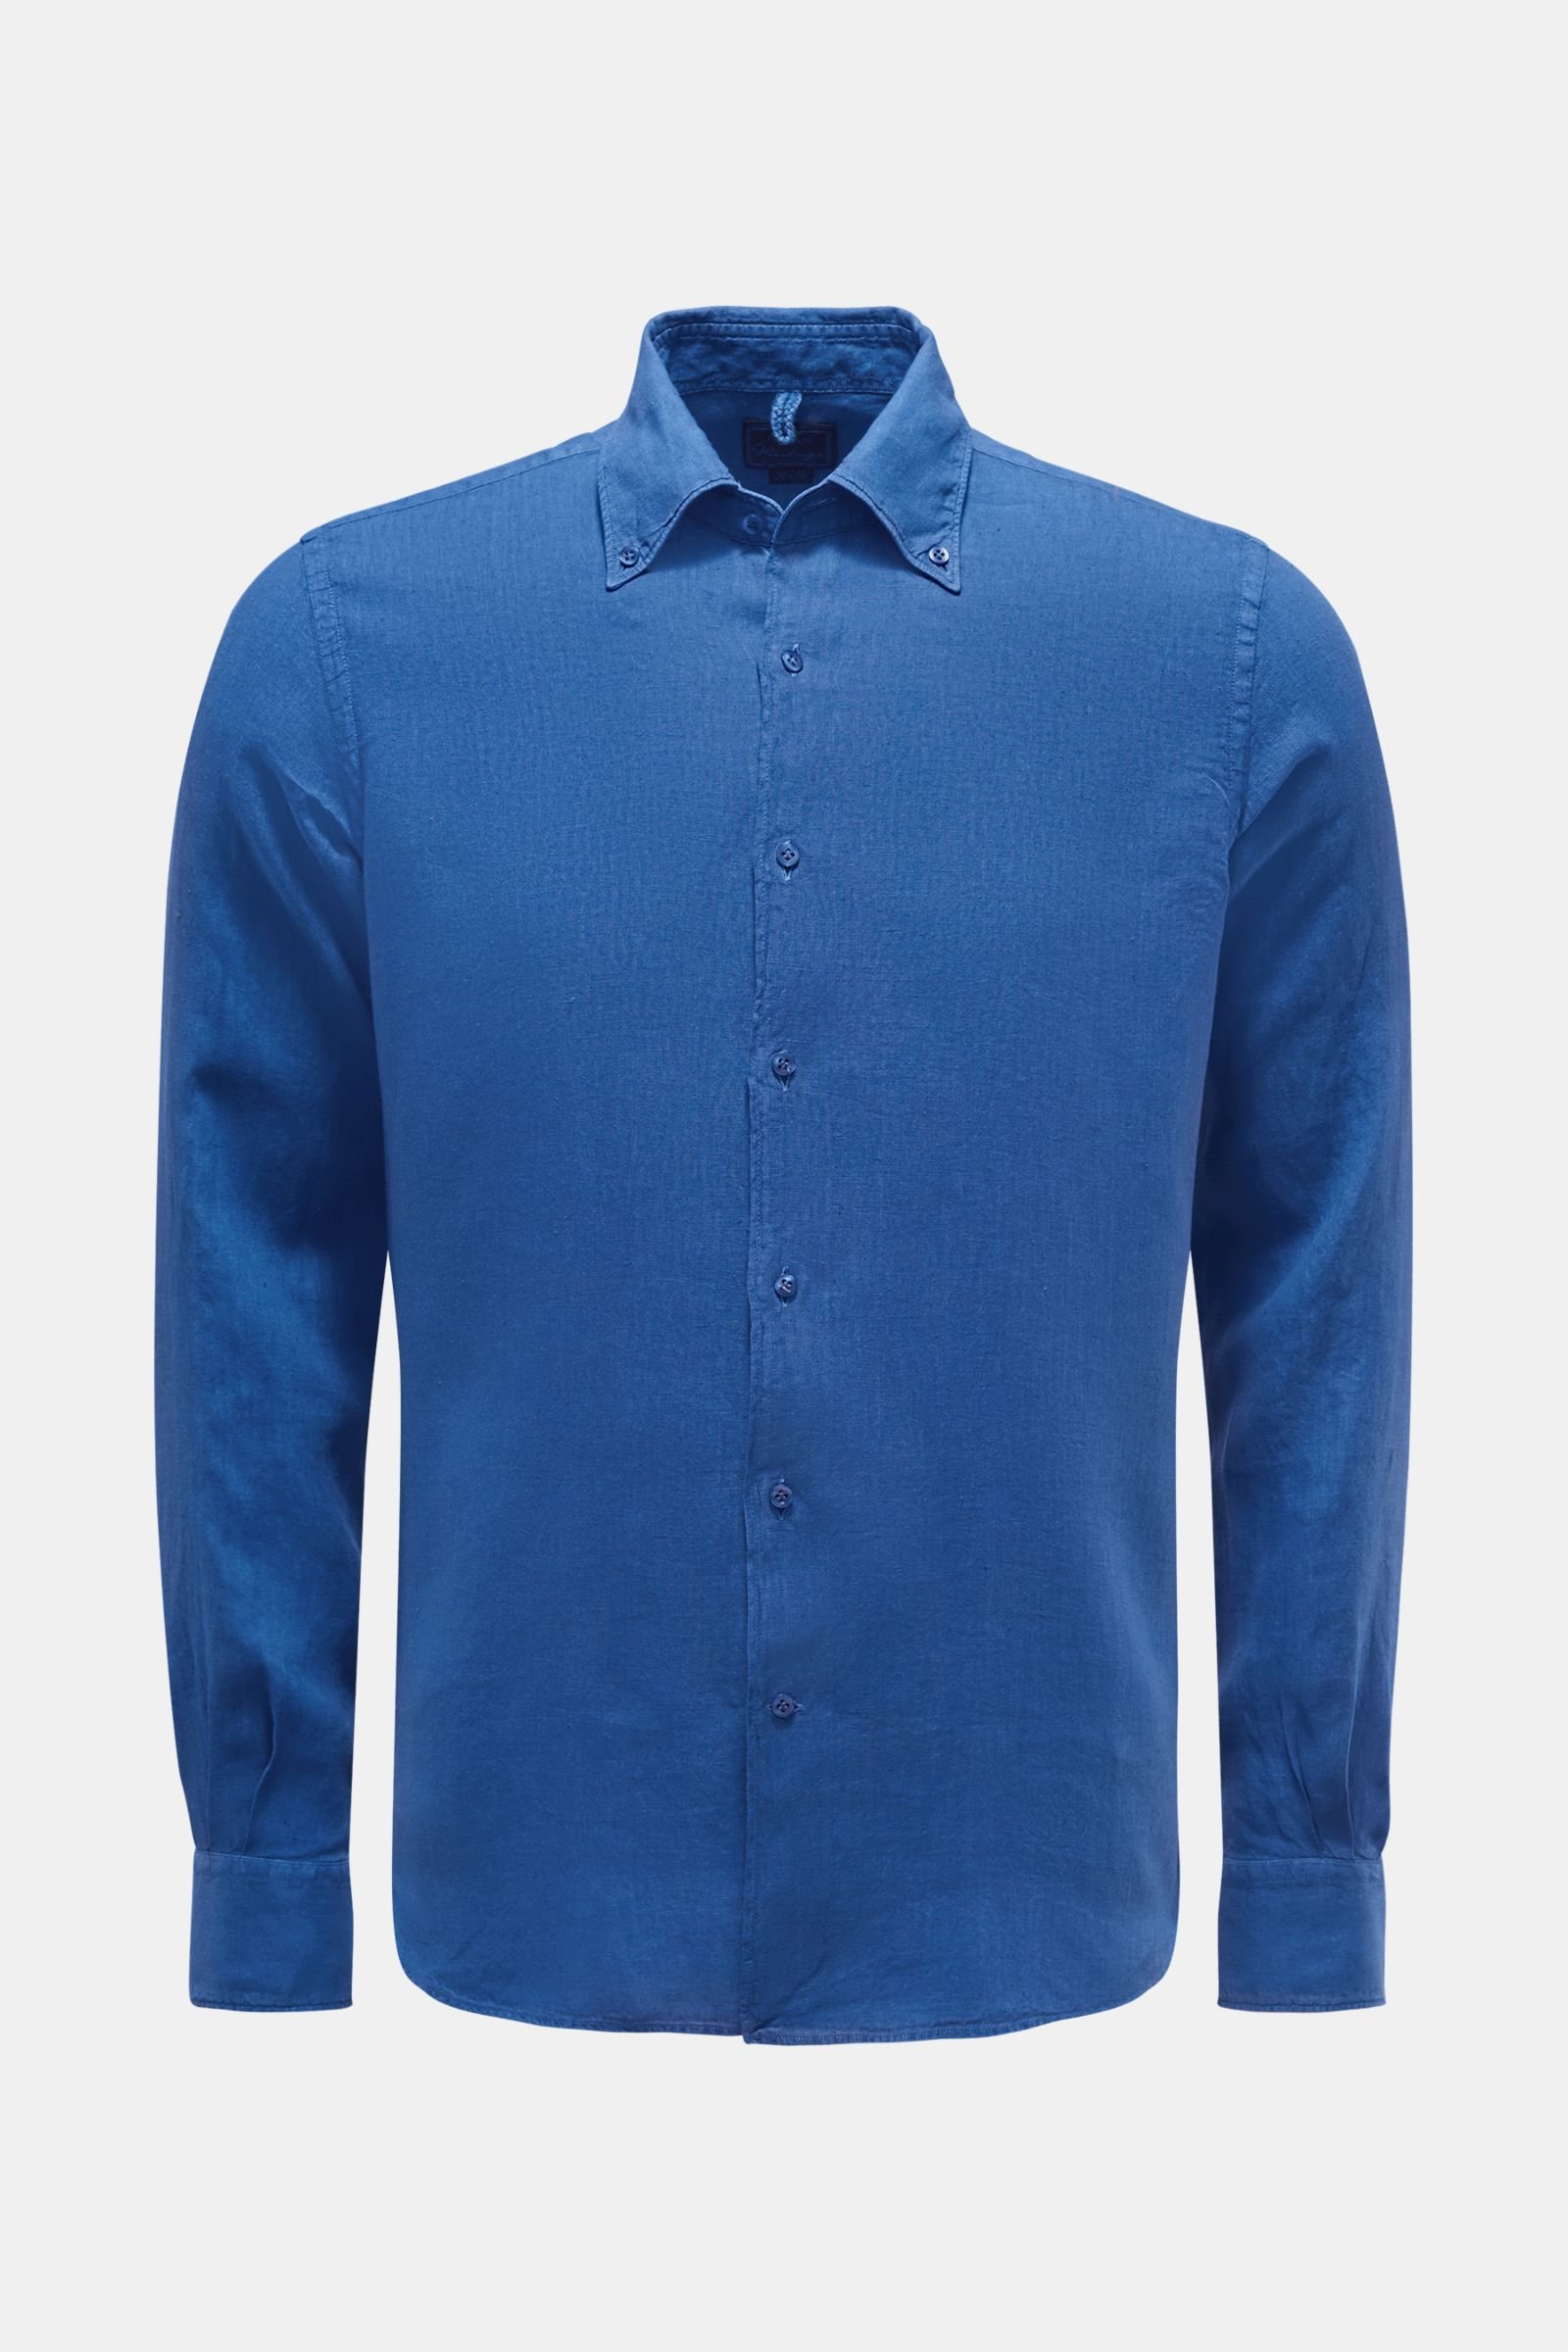 Leinenhemd Button-Down-Kragen blau